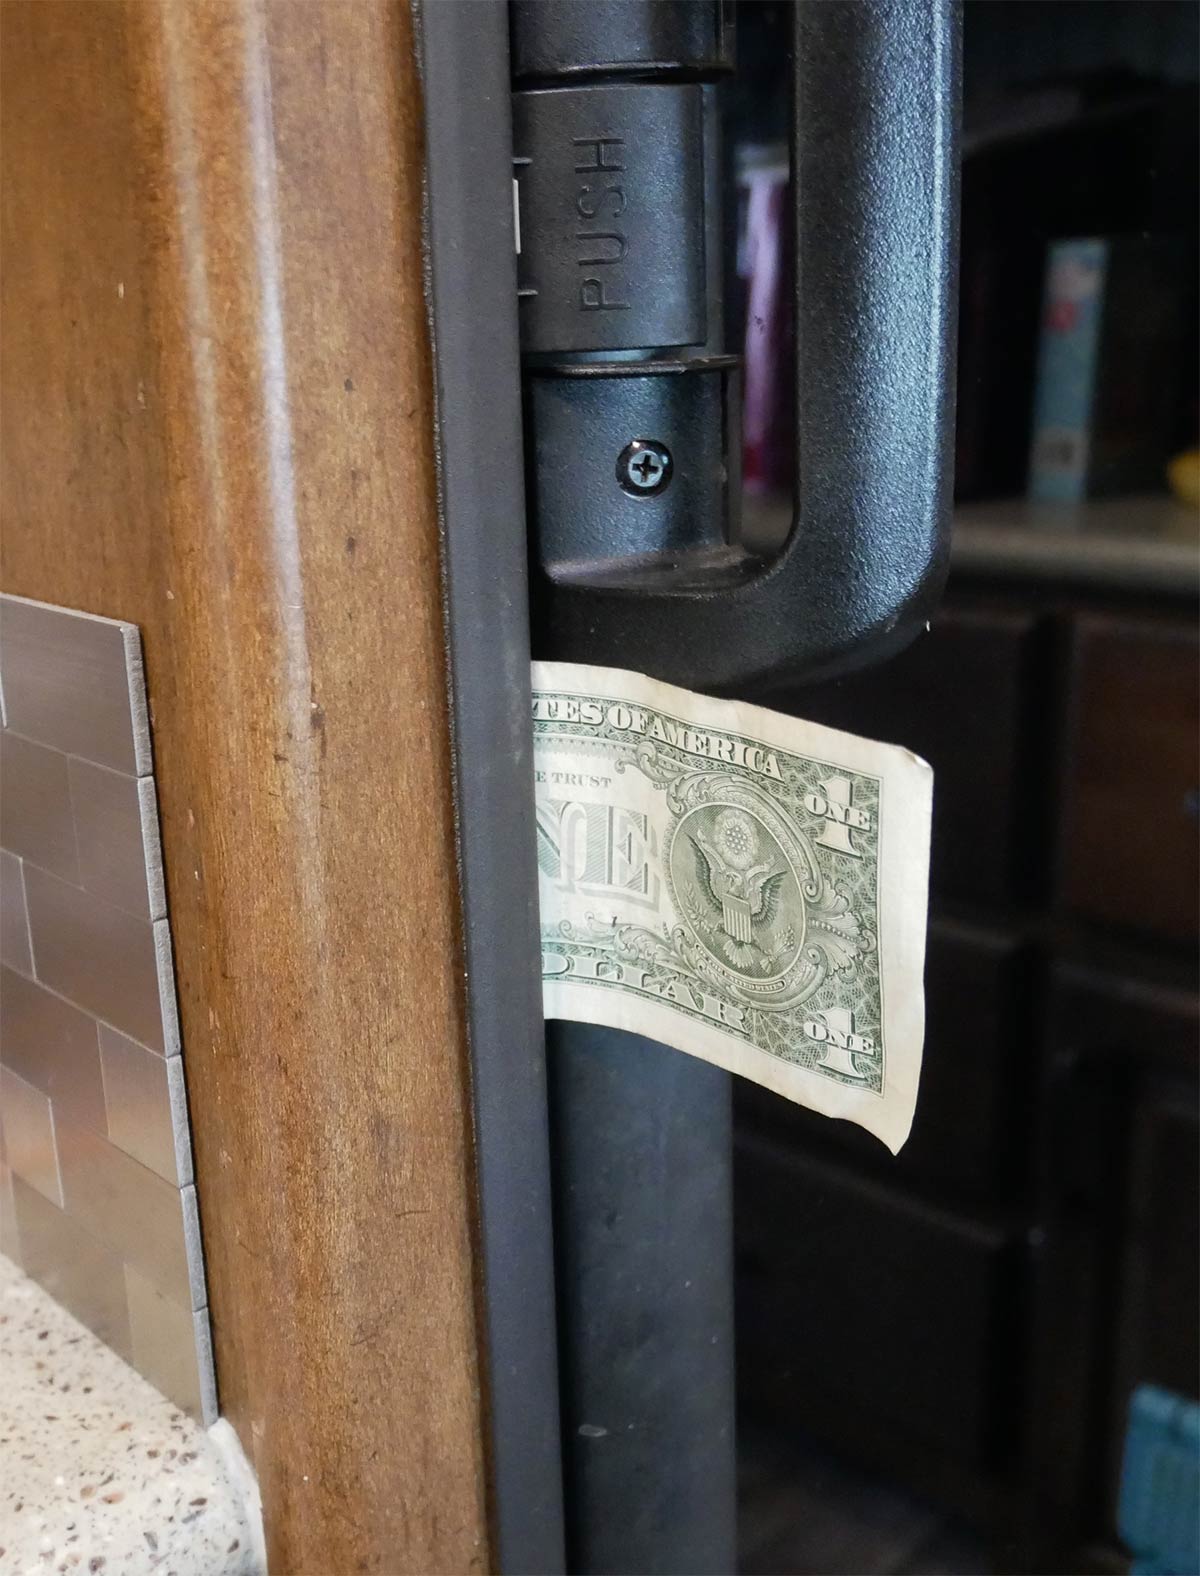 Dollar bill inside a fridge door